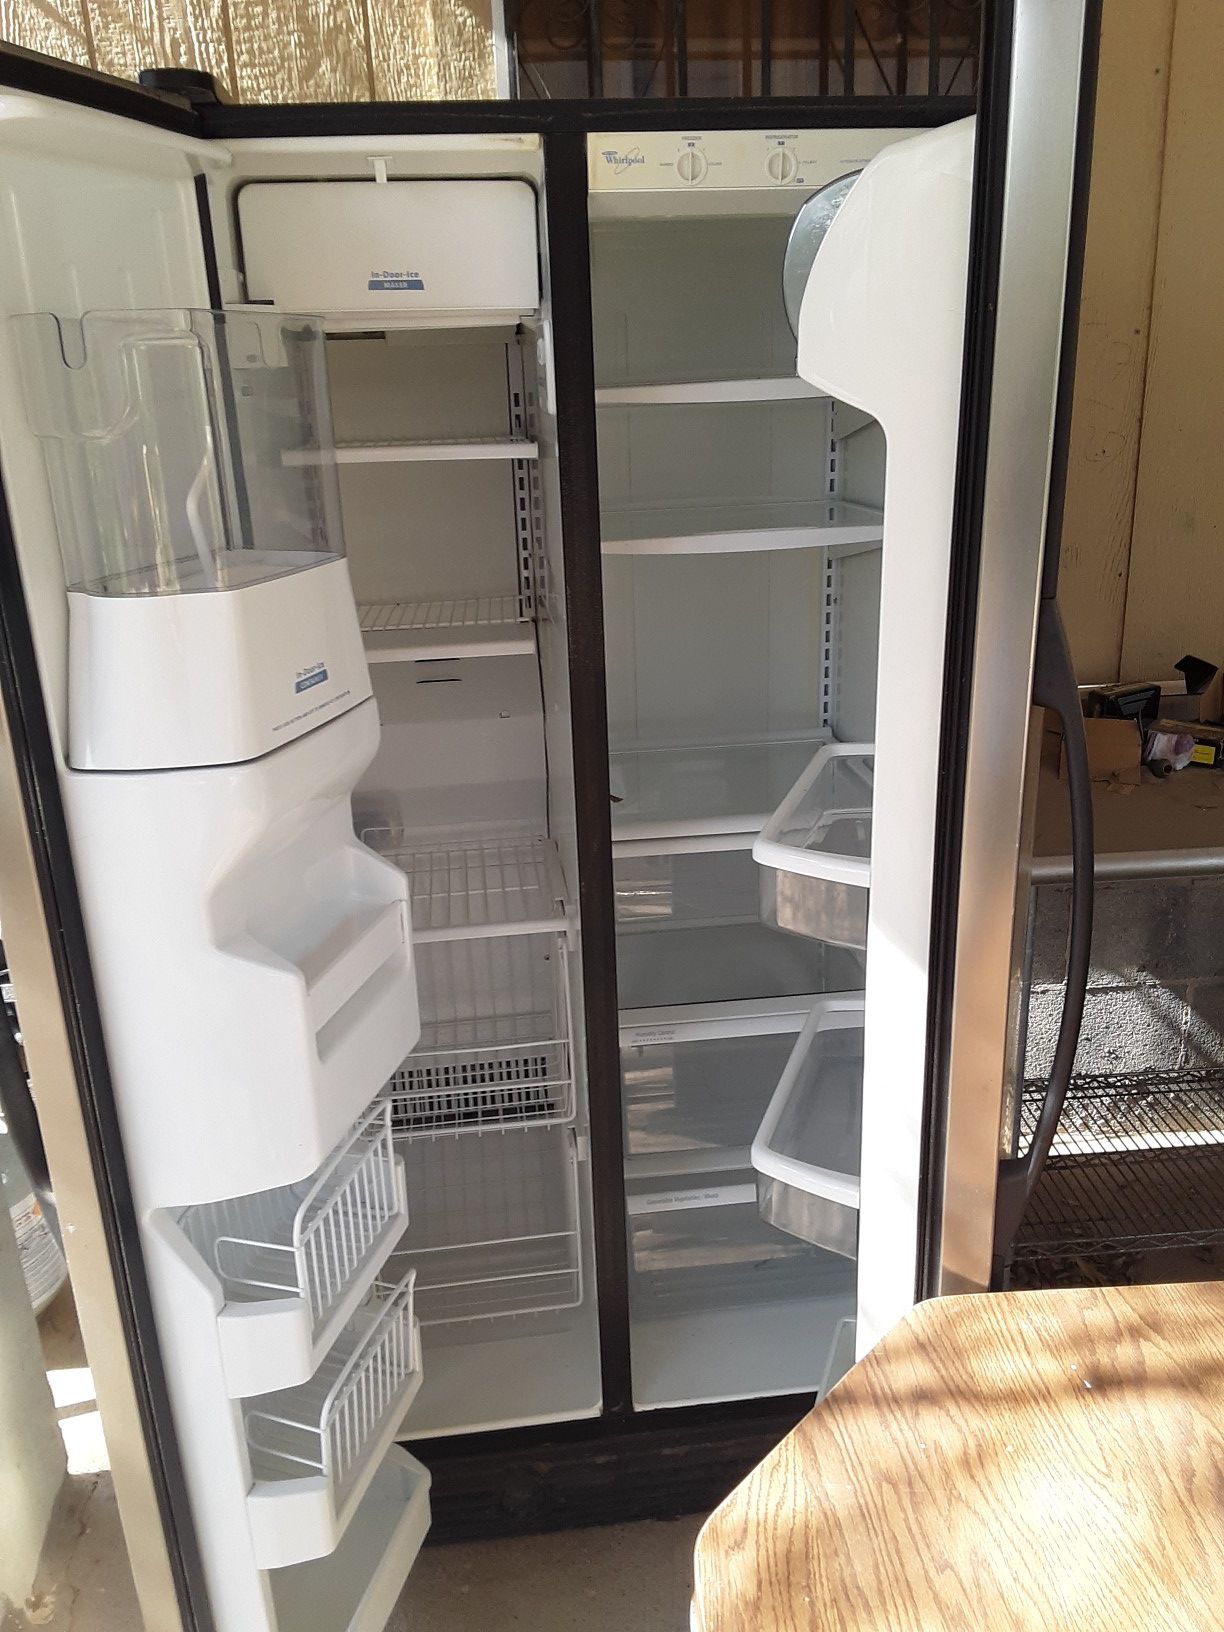 Refrigerador Whirlpool 2 puertas...$100 obo